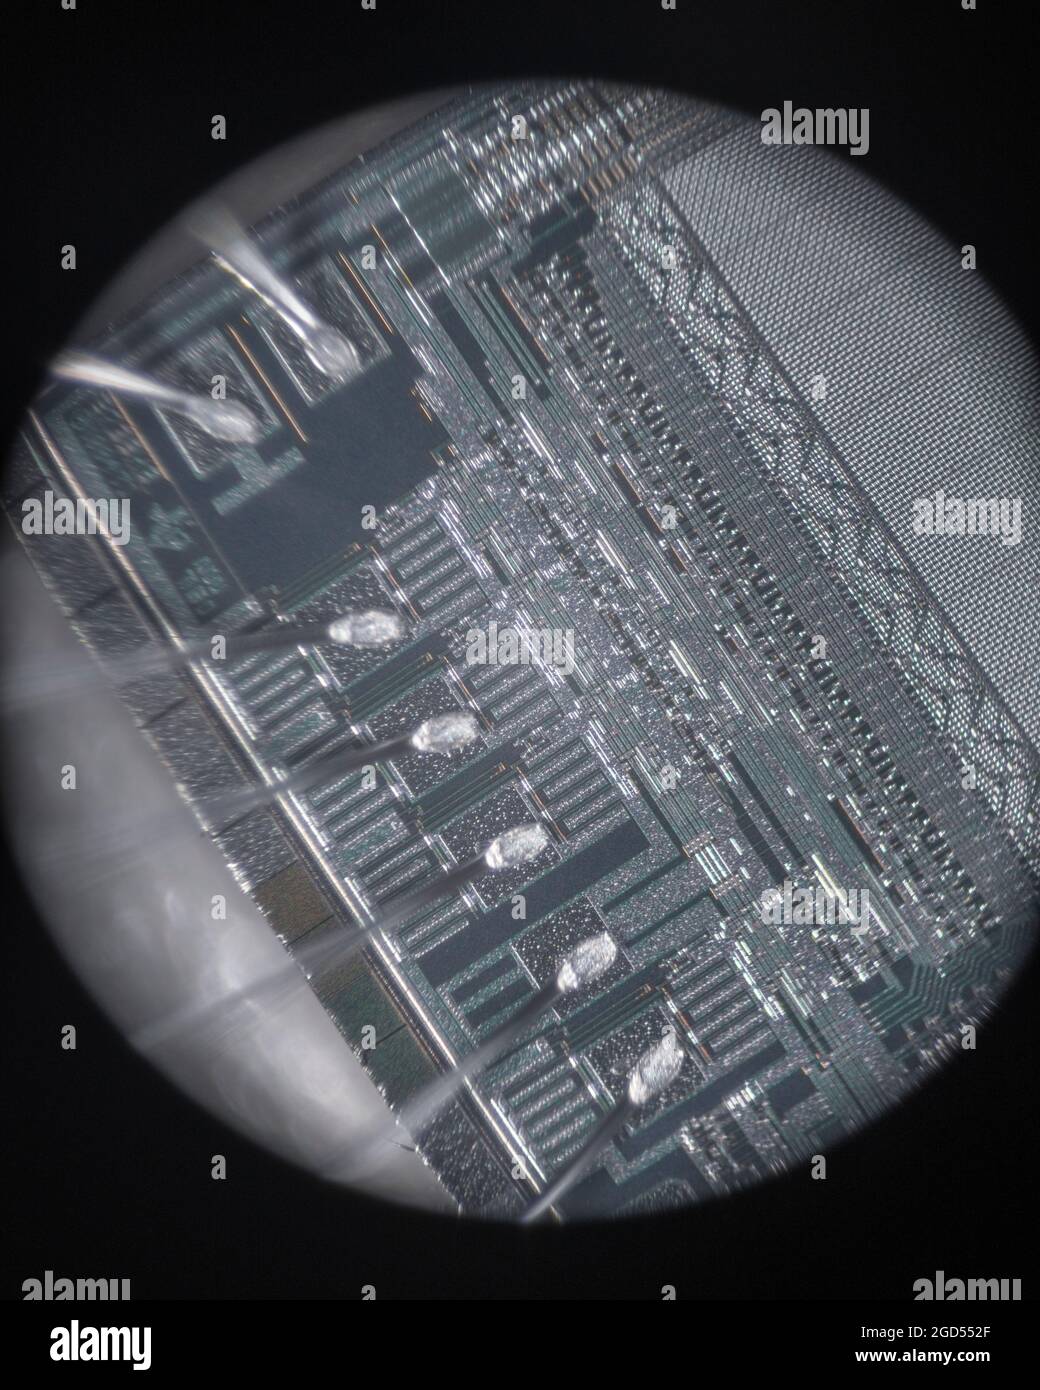 Mikrofotografie der internen Verkabelung und des Matrizenbildschirms von Texas Instruments TMS 2532A-45JL UV Eprom. Aufgenommen durch ein 10-faches Standard-Mikroskop-Objektiv. SIEHE HINWEISE Stockfoto